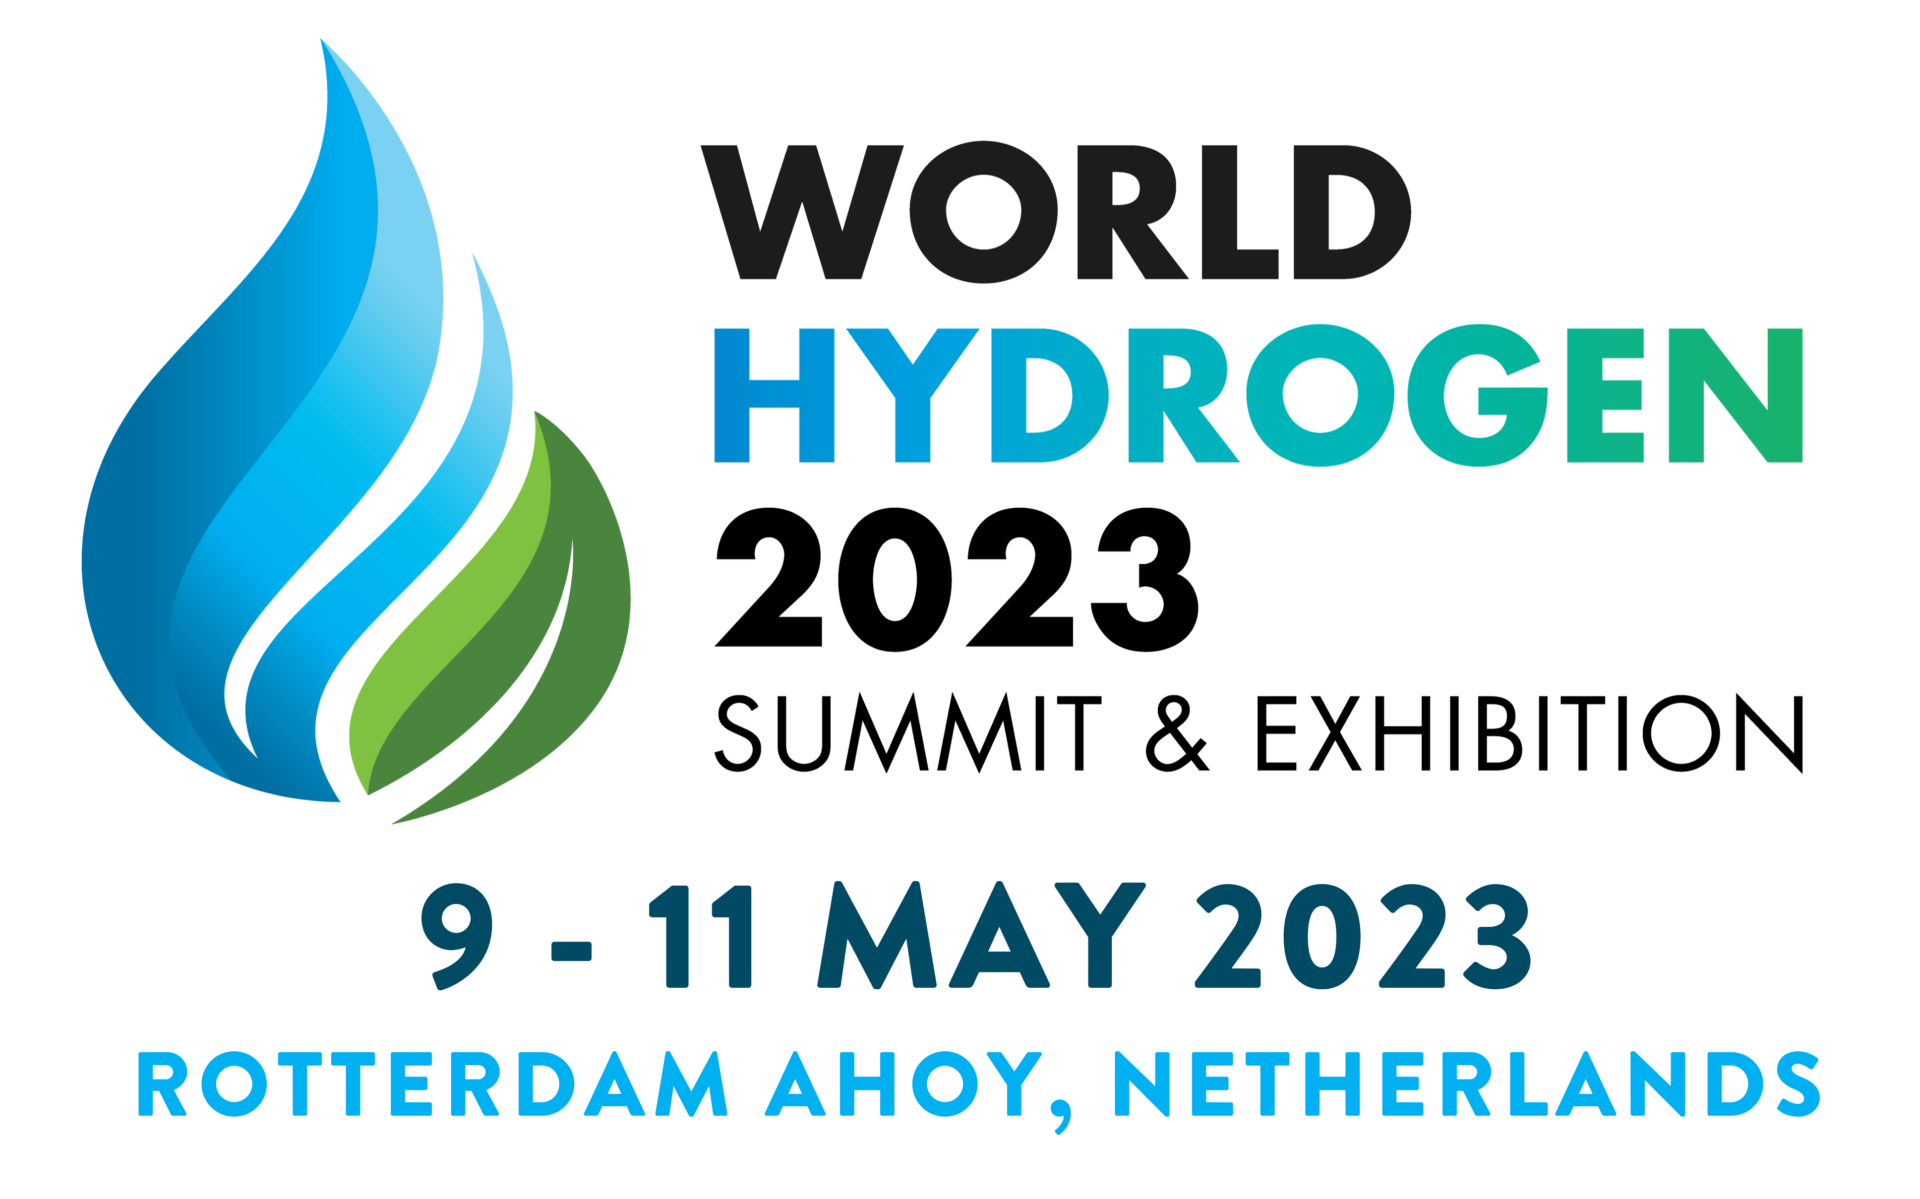  World Hydrogen 2023 Summit & Exhibition